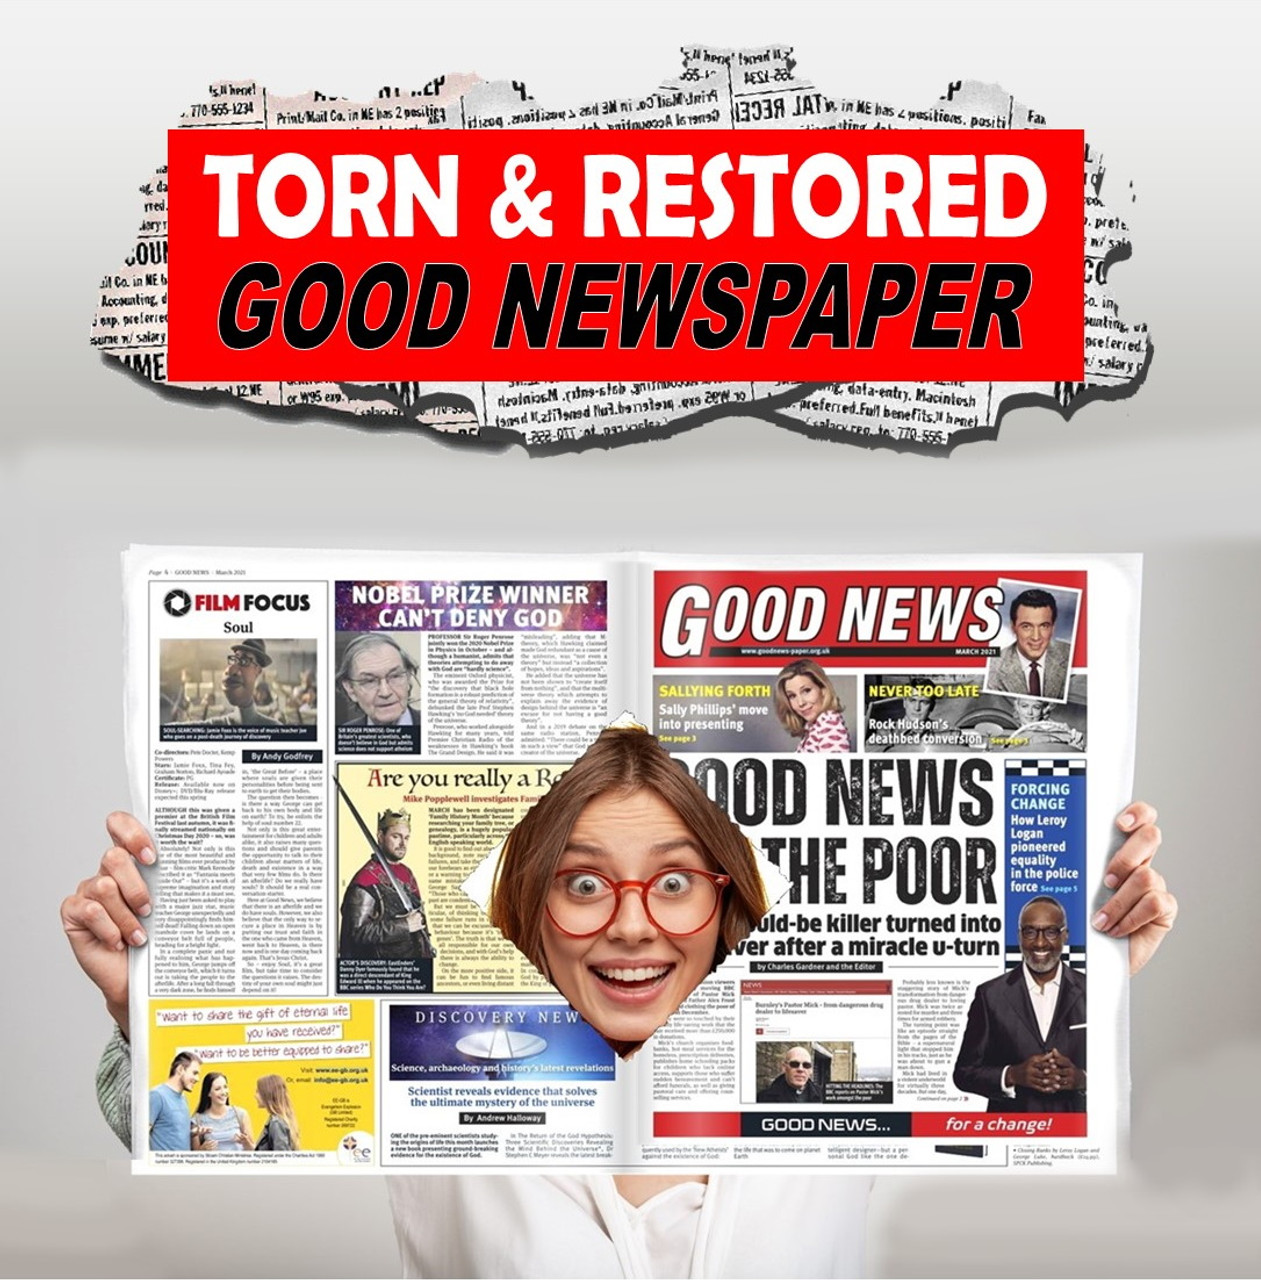 Good News Torn & Restored newspaper magic trick